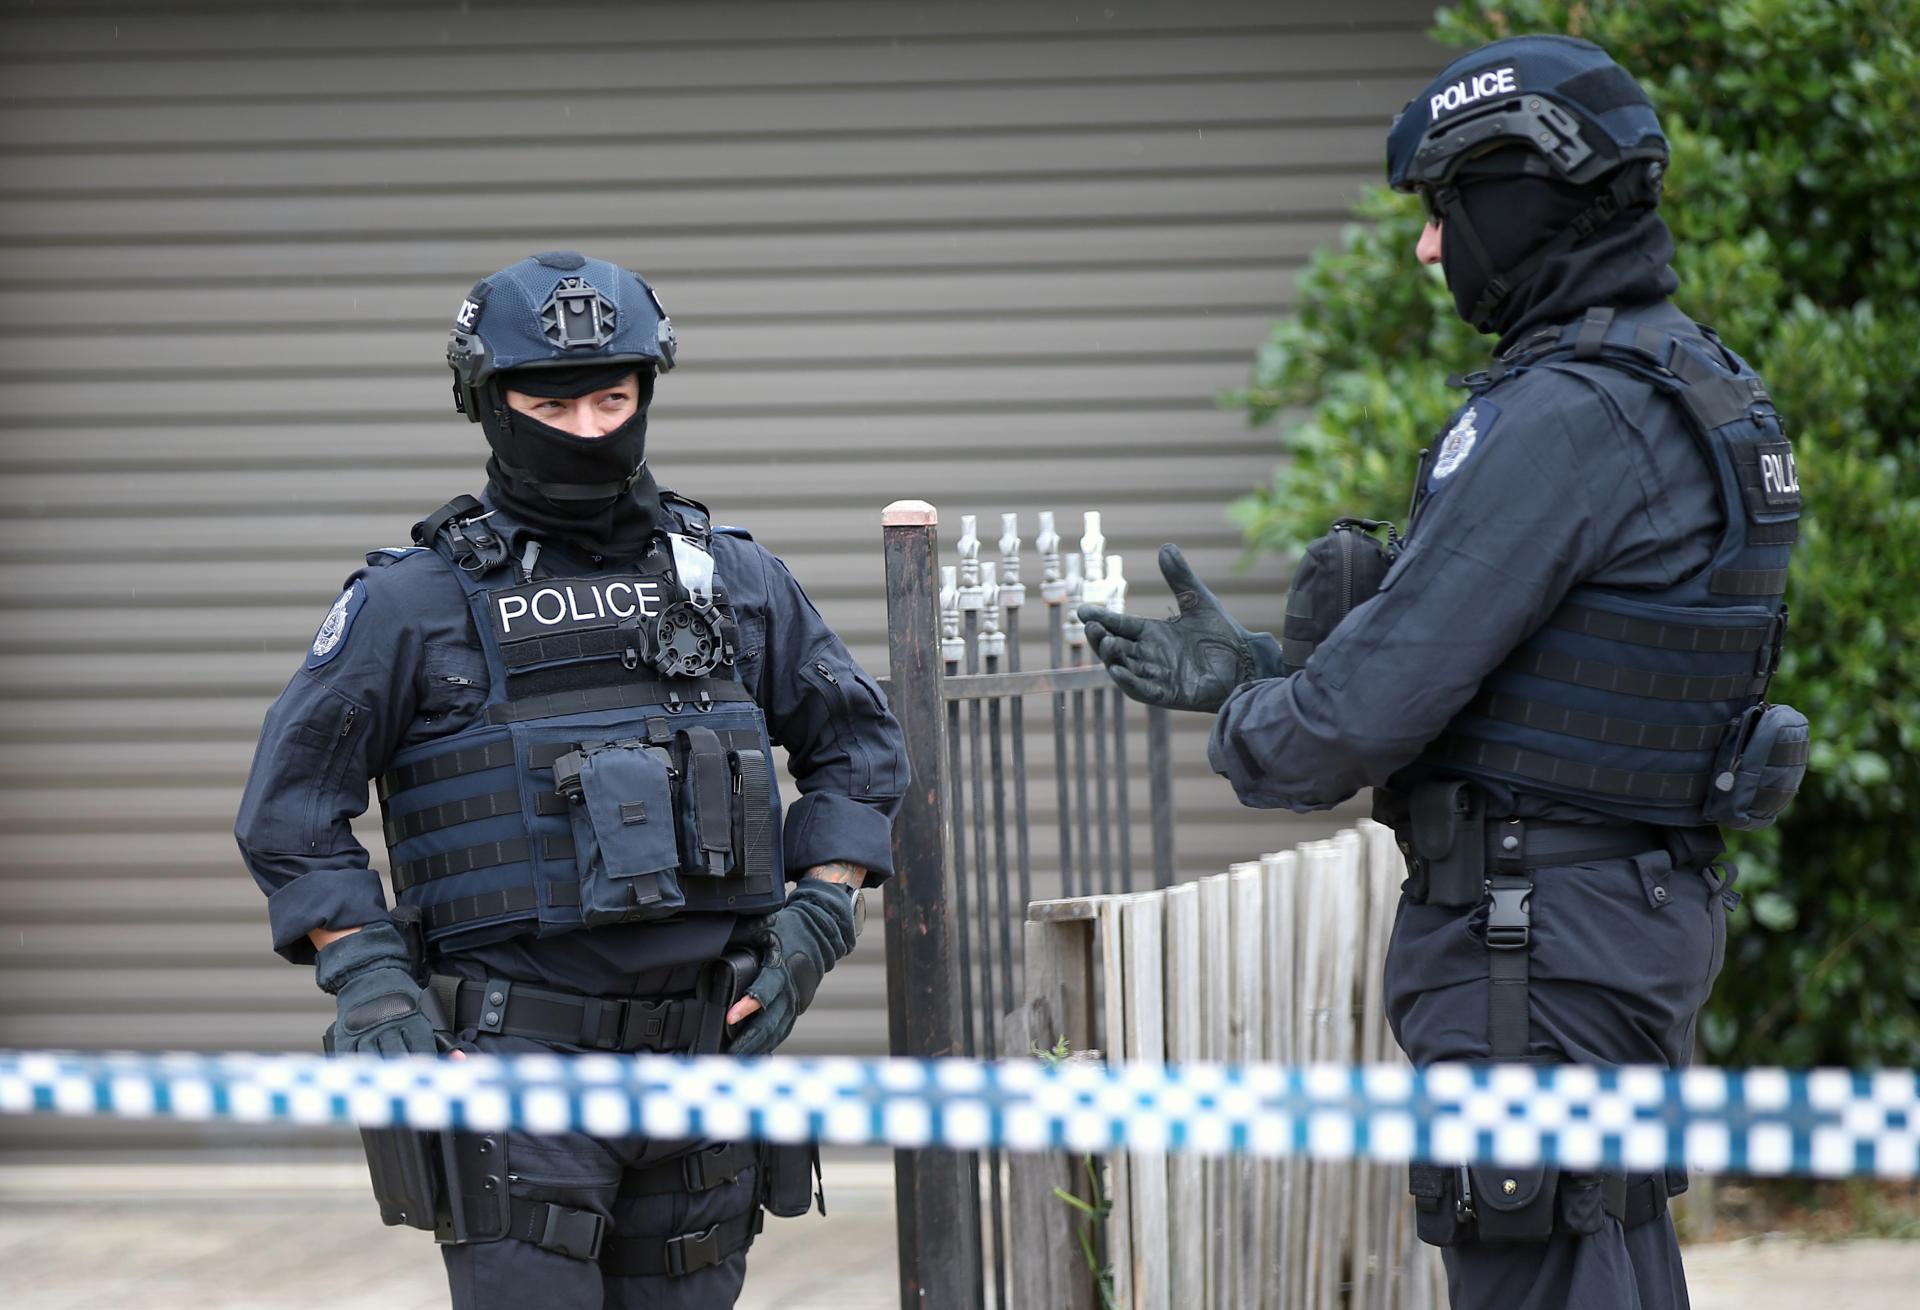 Útok nožom a streľba v Sydney: Z nákupného centra evakuovali stovky ľudí, na mieste zasahuje polícia